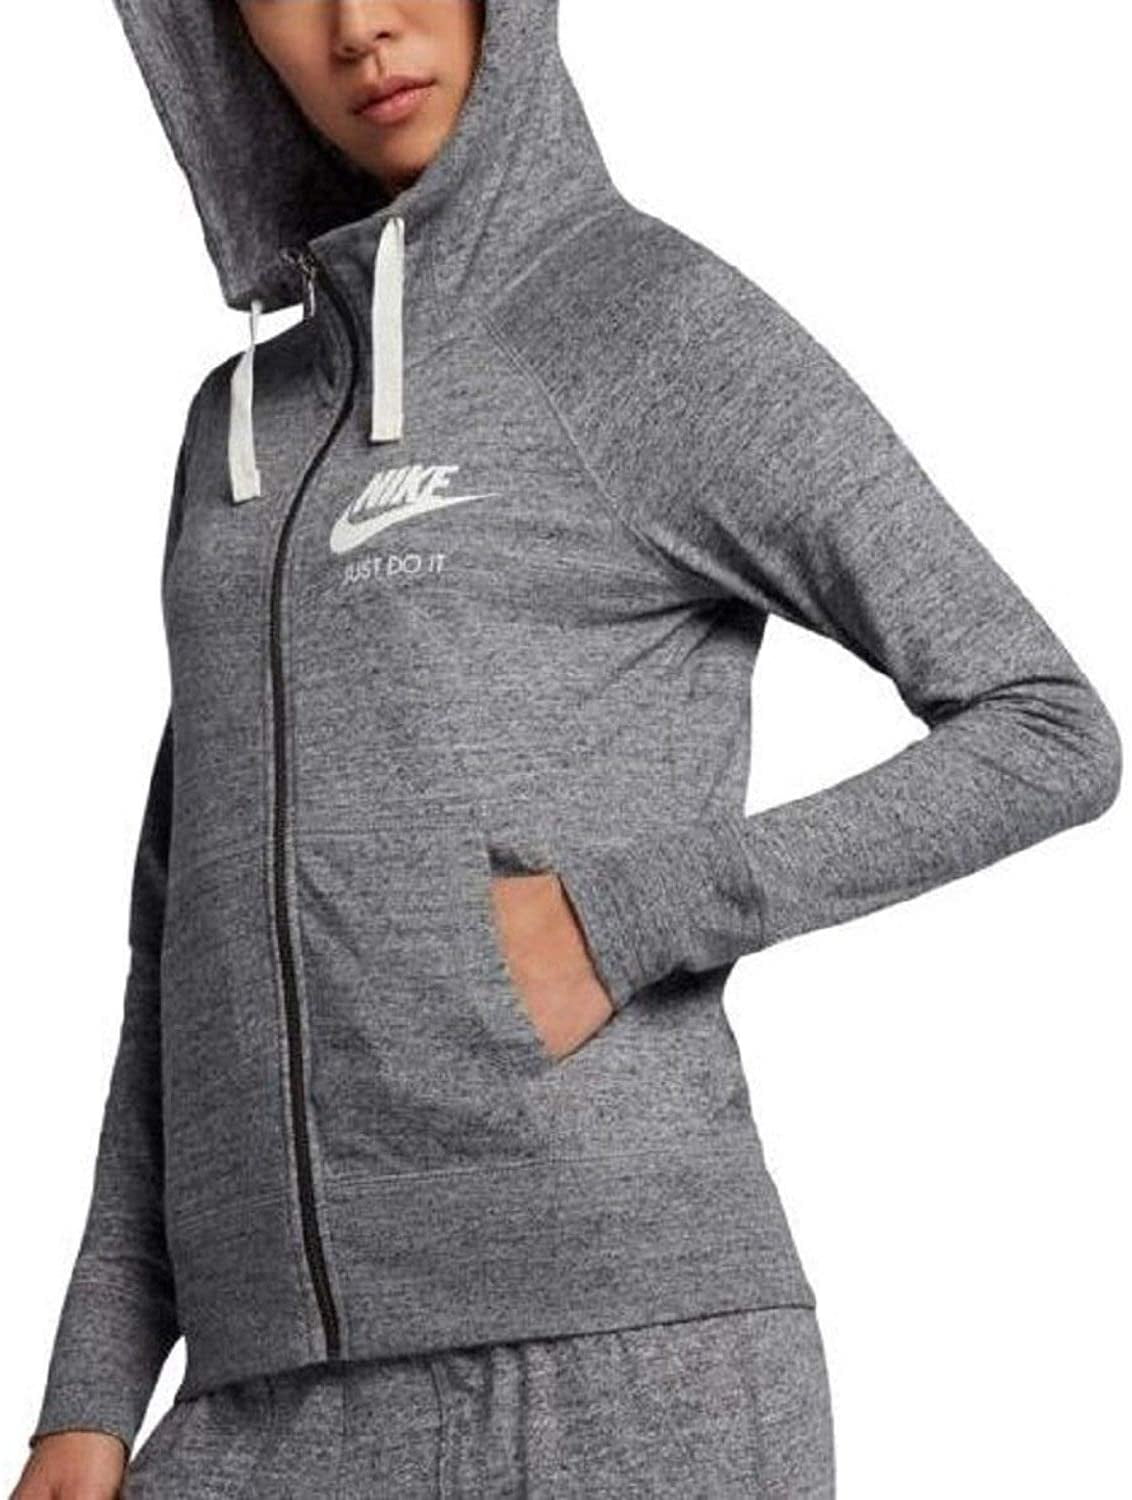 nike womens grey zip hoodie